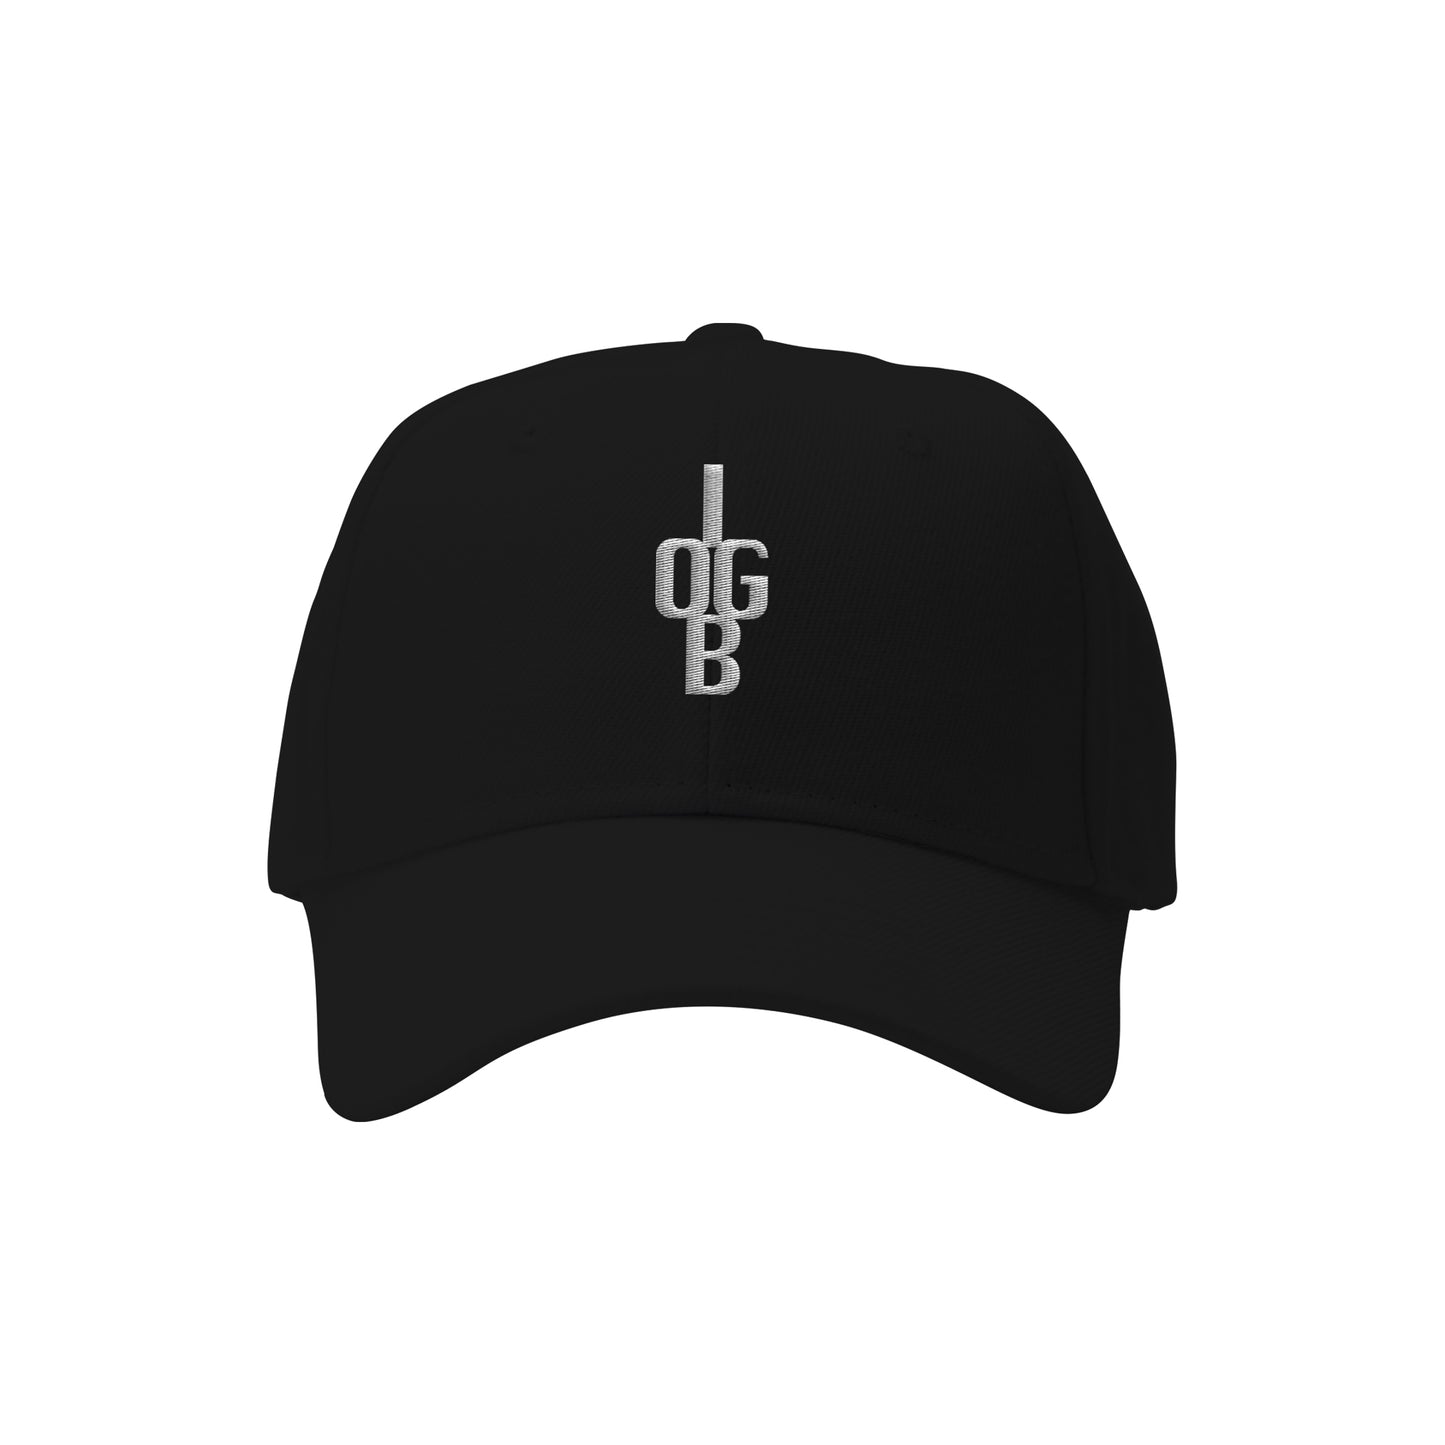 'IOGB' Embroidered Cap